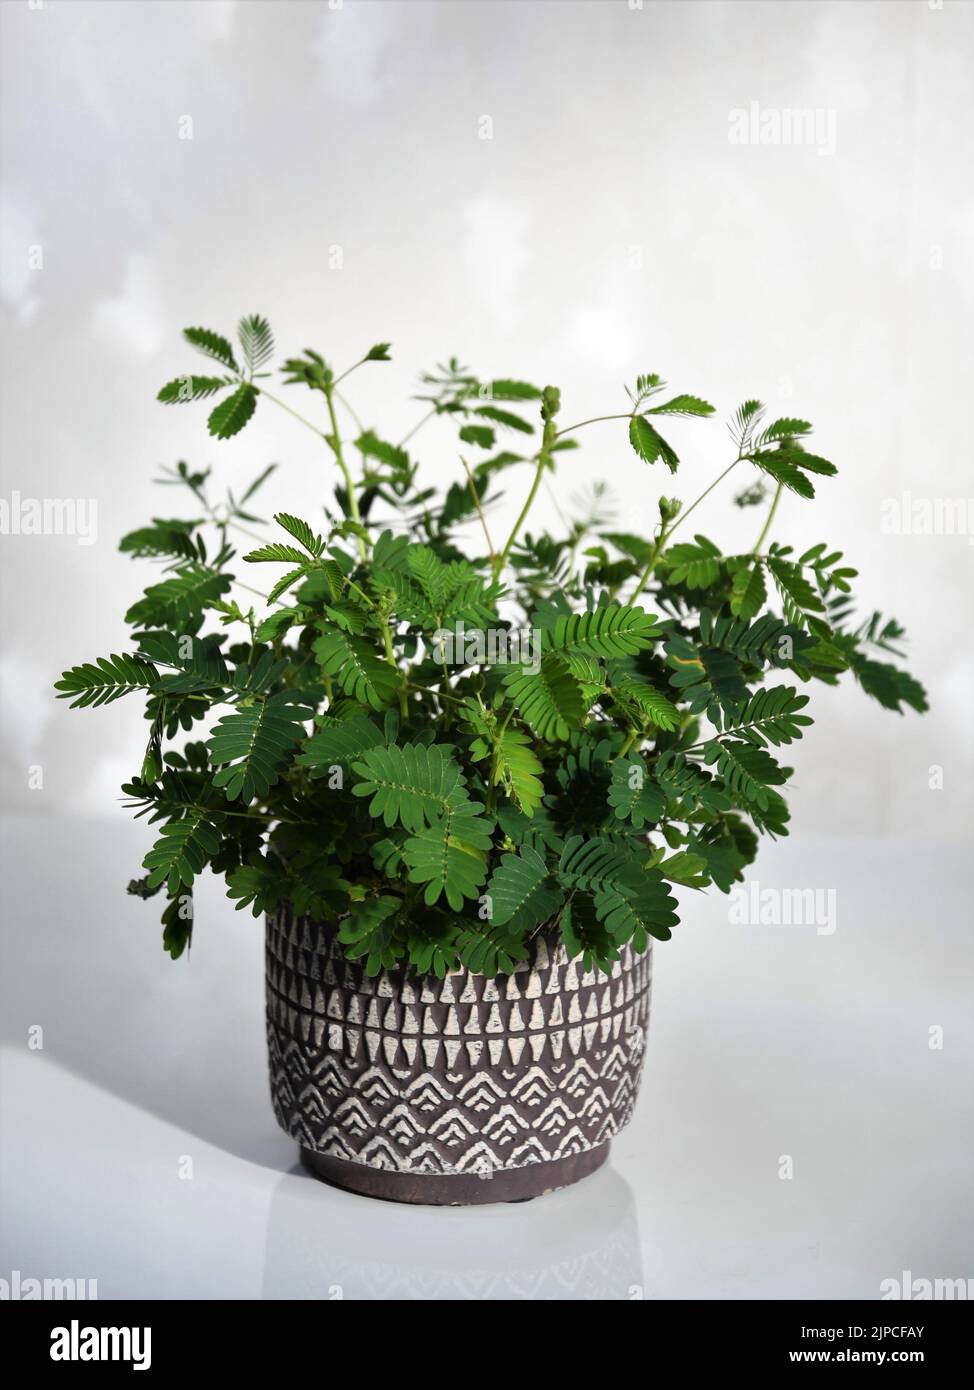 Mimosa pudica Zimmerpflanze, auch bekannt als empfindliche Pflanze, verschlamme Pflanze, Action-Pflanze, Touch-Me-Not und Schampflanze. Grüne Pflanze in einem violetten Topf. Stockfoto